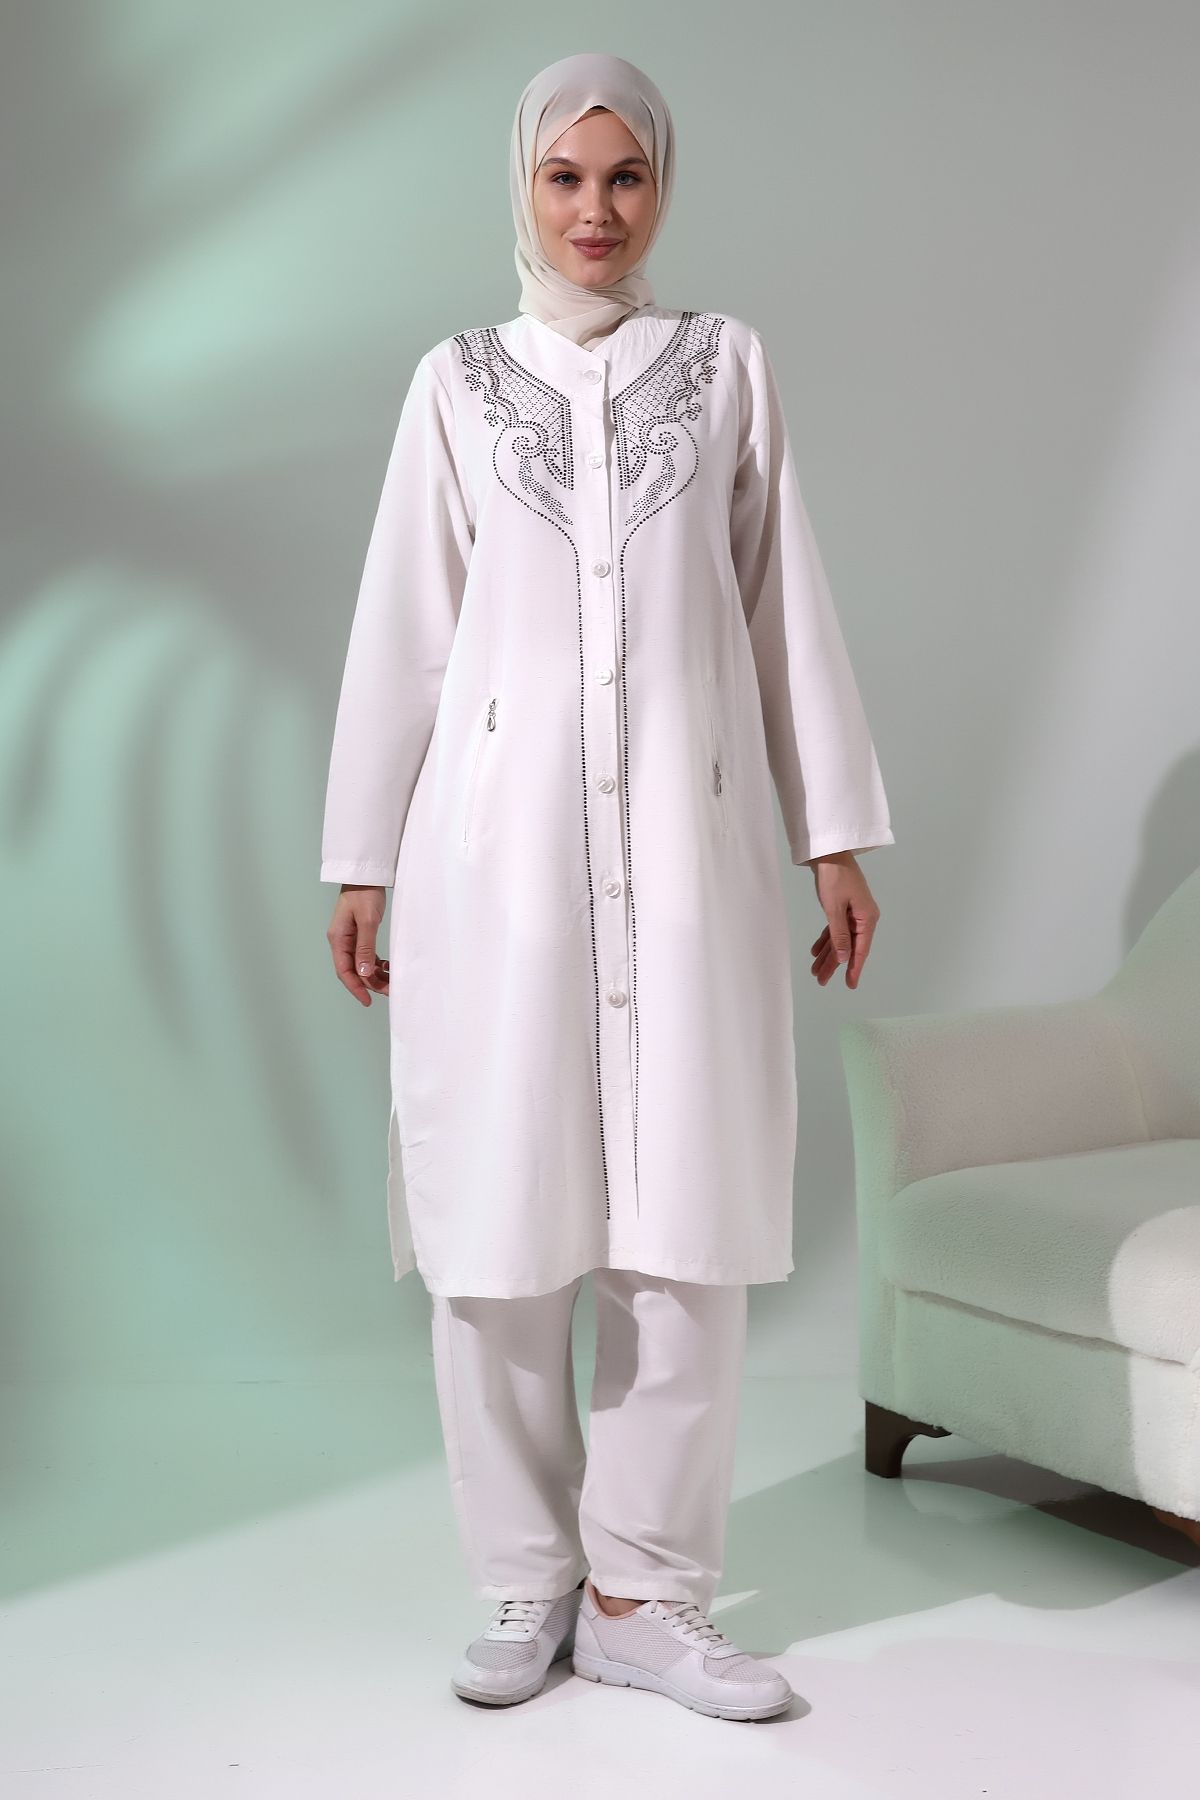 ihvanonline Kadın Hac Ve Umre Kıyafeti Taş Detaylı Ikili Takım Kırık Beyaz